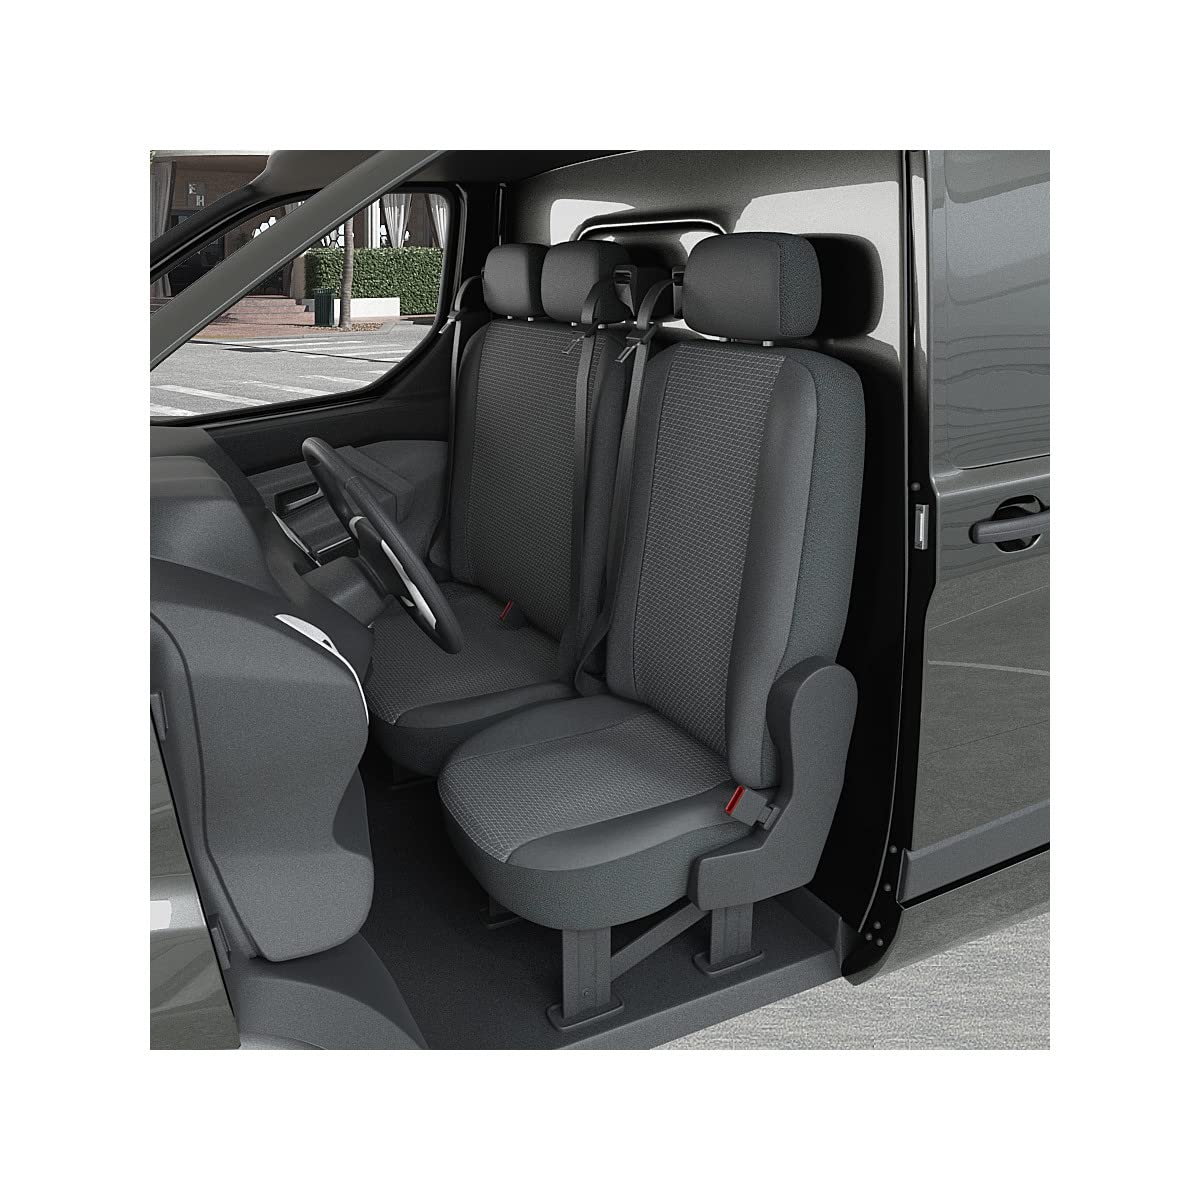 DBS 1013200 Sitzbezug für Auto/Nutzfahrzeuge, Kunstleder, schnelle Montage, kompatibel mit Airbag-Isofix-1013200 von DBS